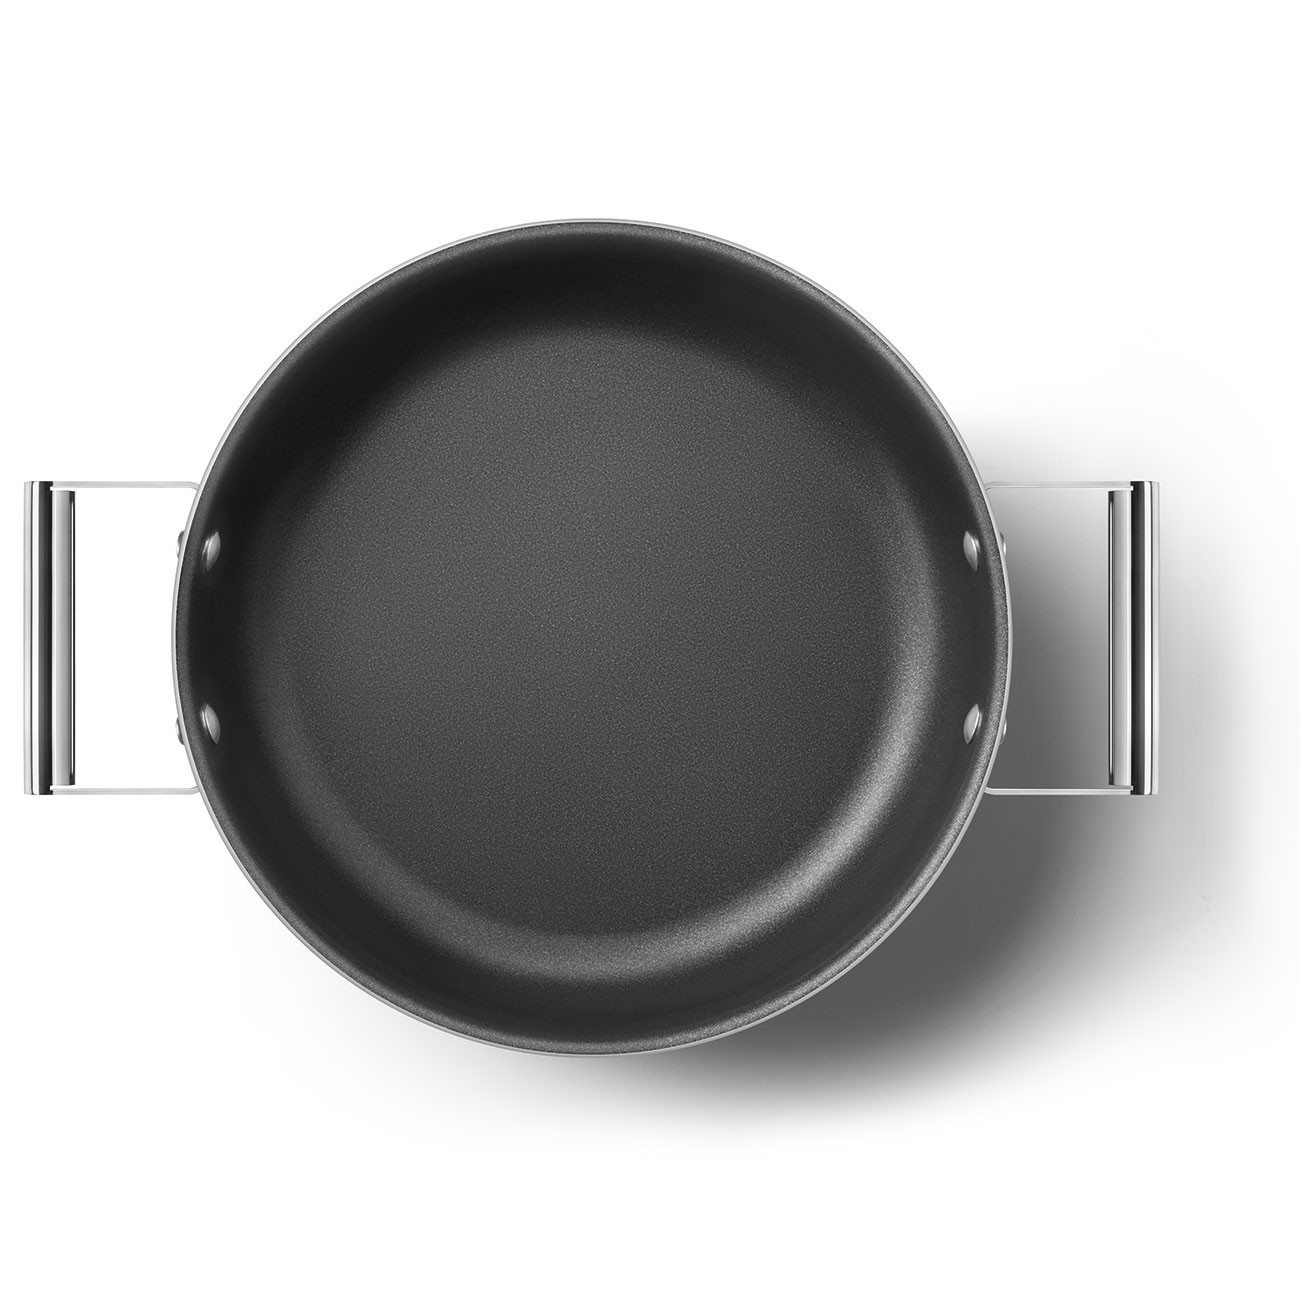 tegame antiaderente Cookware panna estetica 50's Style Ø28cm